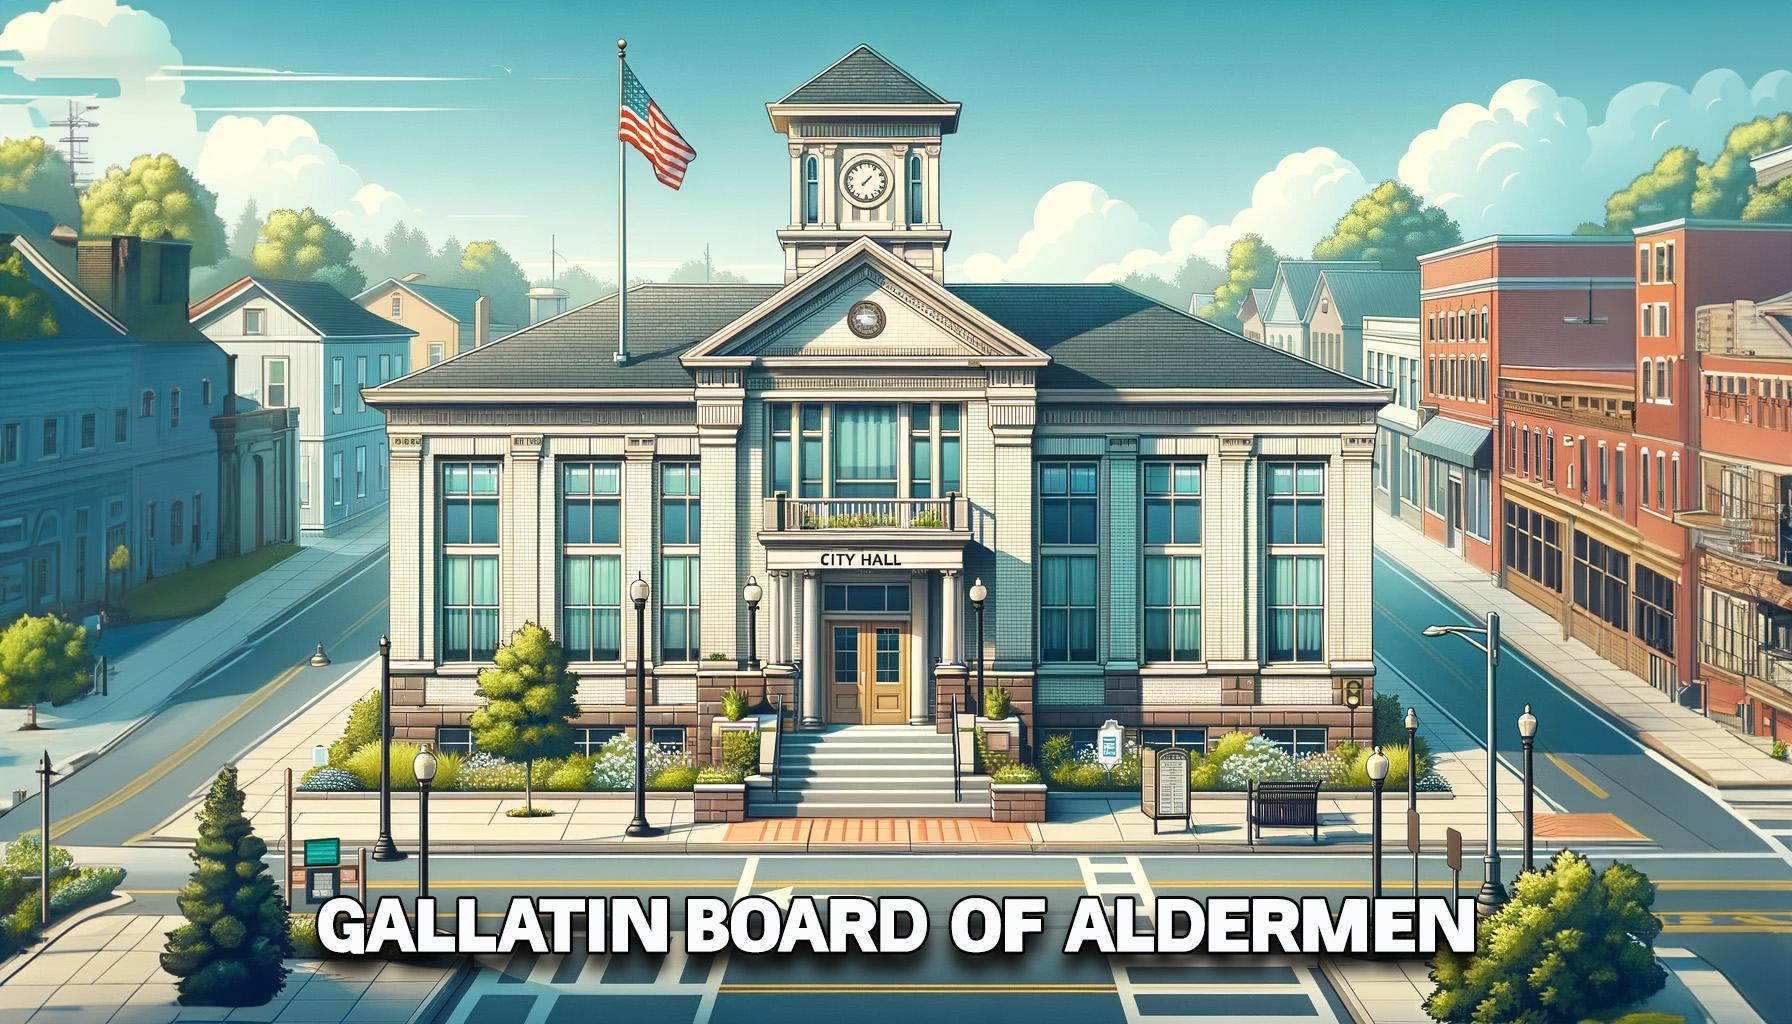 Gallatin Board of Aldermen news graphic